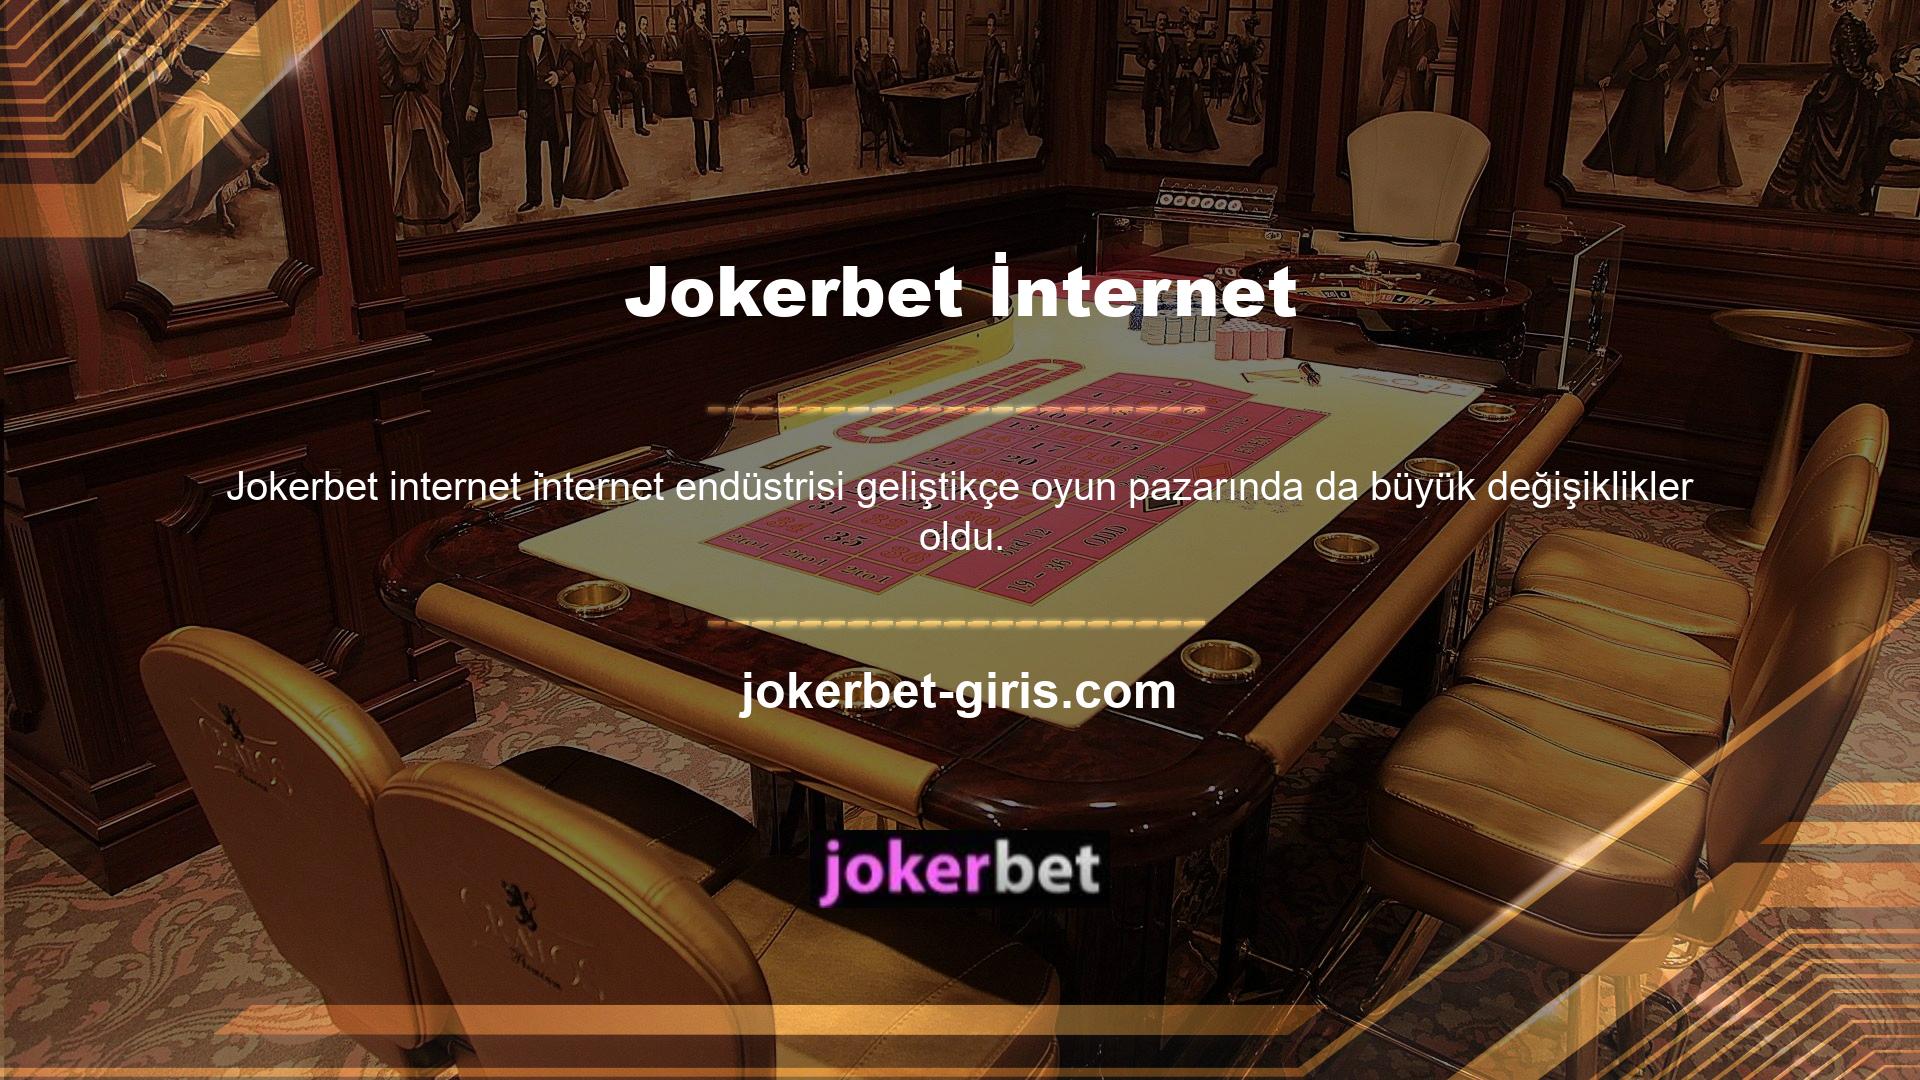 Oyun geliştiricileri, Jokerbet mobil portalındaki oyun teknolojisinin gelişmesinden ve oyunların internete bağımlılığının artmasından büyük ölçüde etkilendi ve bu da şirketlere damgasını vurdu